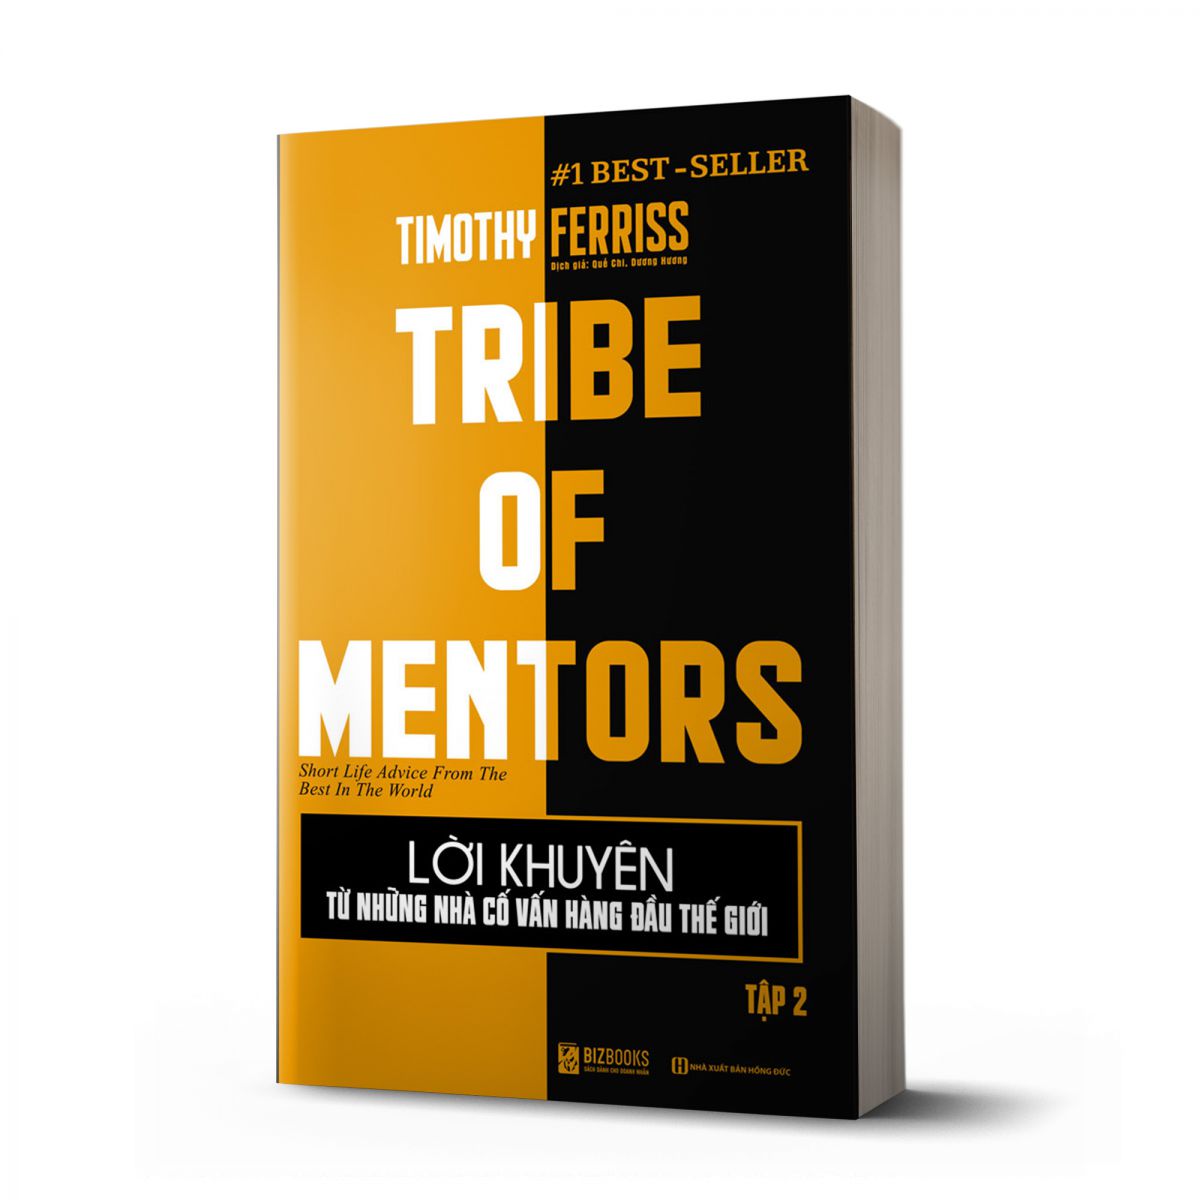 Lời khuyên từ những nhà cố vấn hàng đầu thế giới – Tribe of mentor (Tập 2)